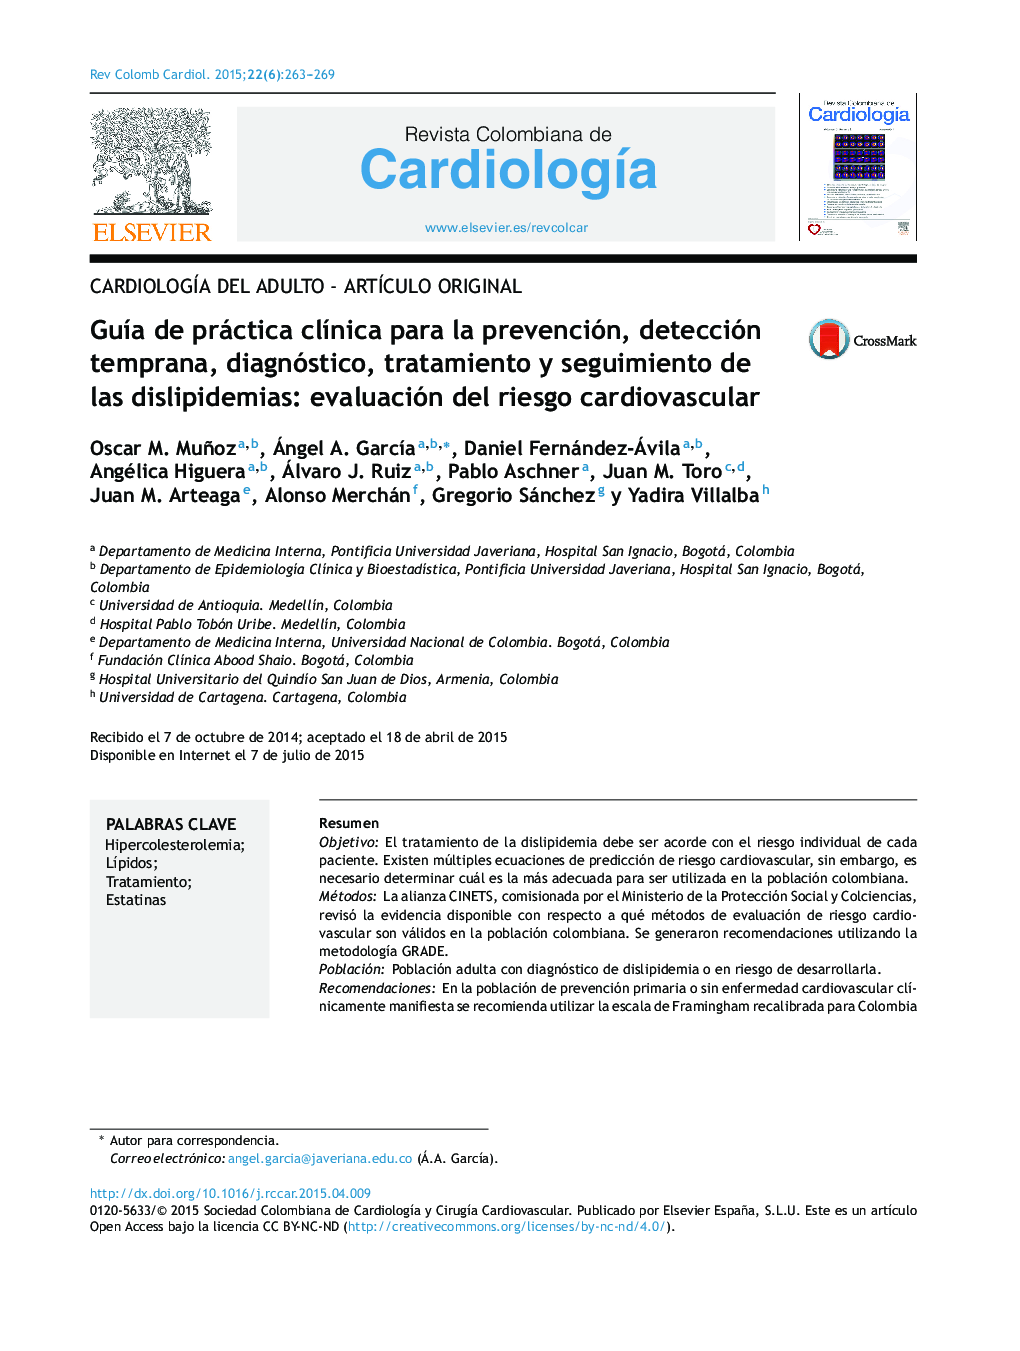 Guía de práctica clínica para la prevención, detección temprana, diagnóstico, tratamiento y seguimiento de las dislipidemias: evaluación del riesgo cardiovascular